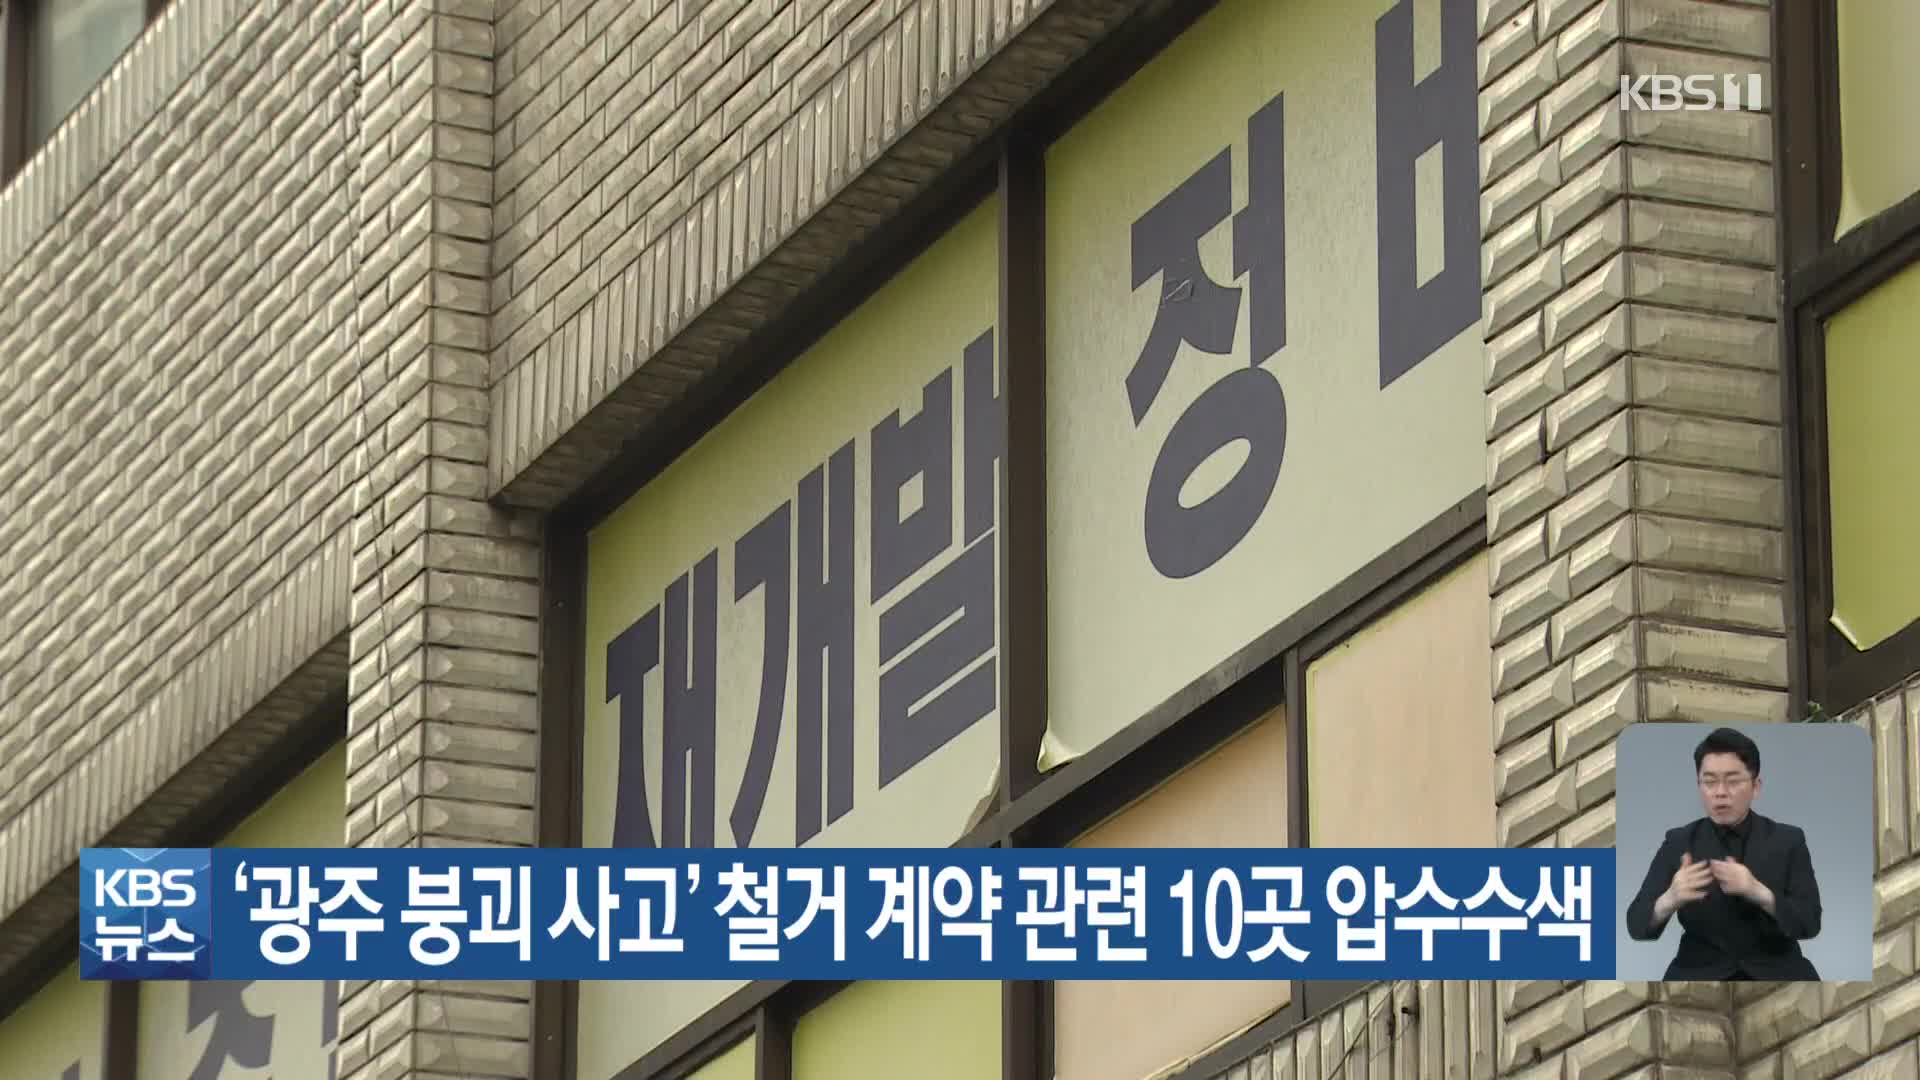 ‘광주 붕괴 사고’ 철거 계약 관련 10곳 압수수색